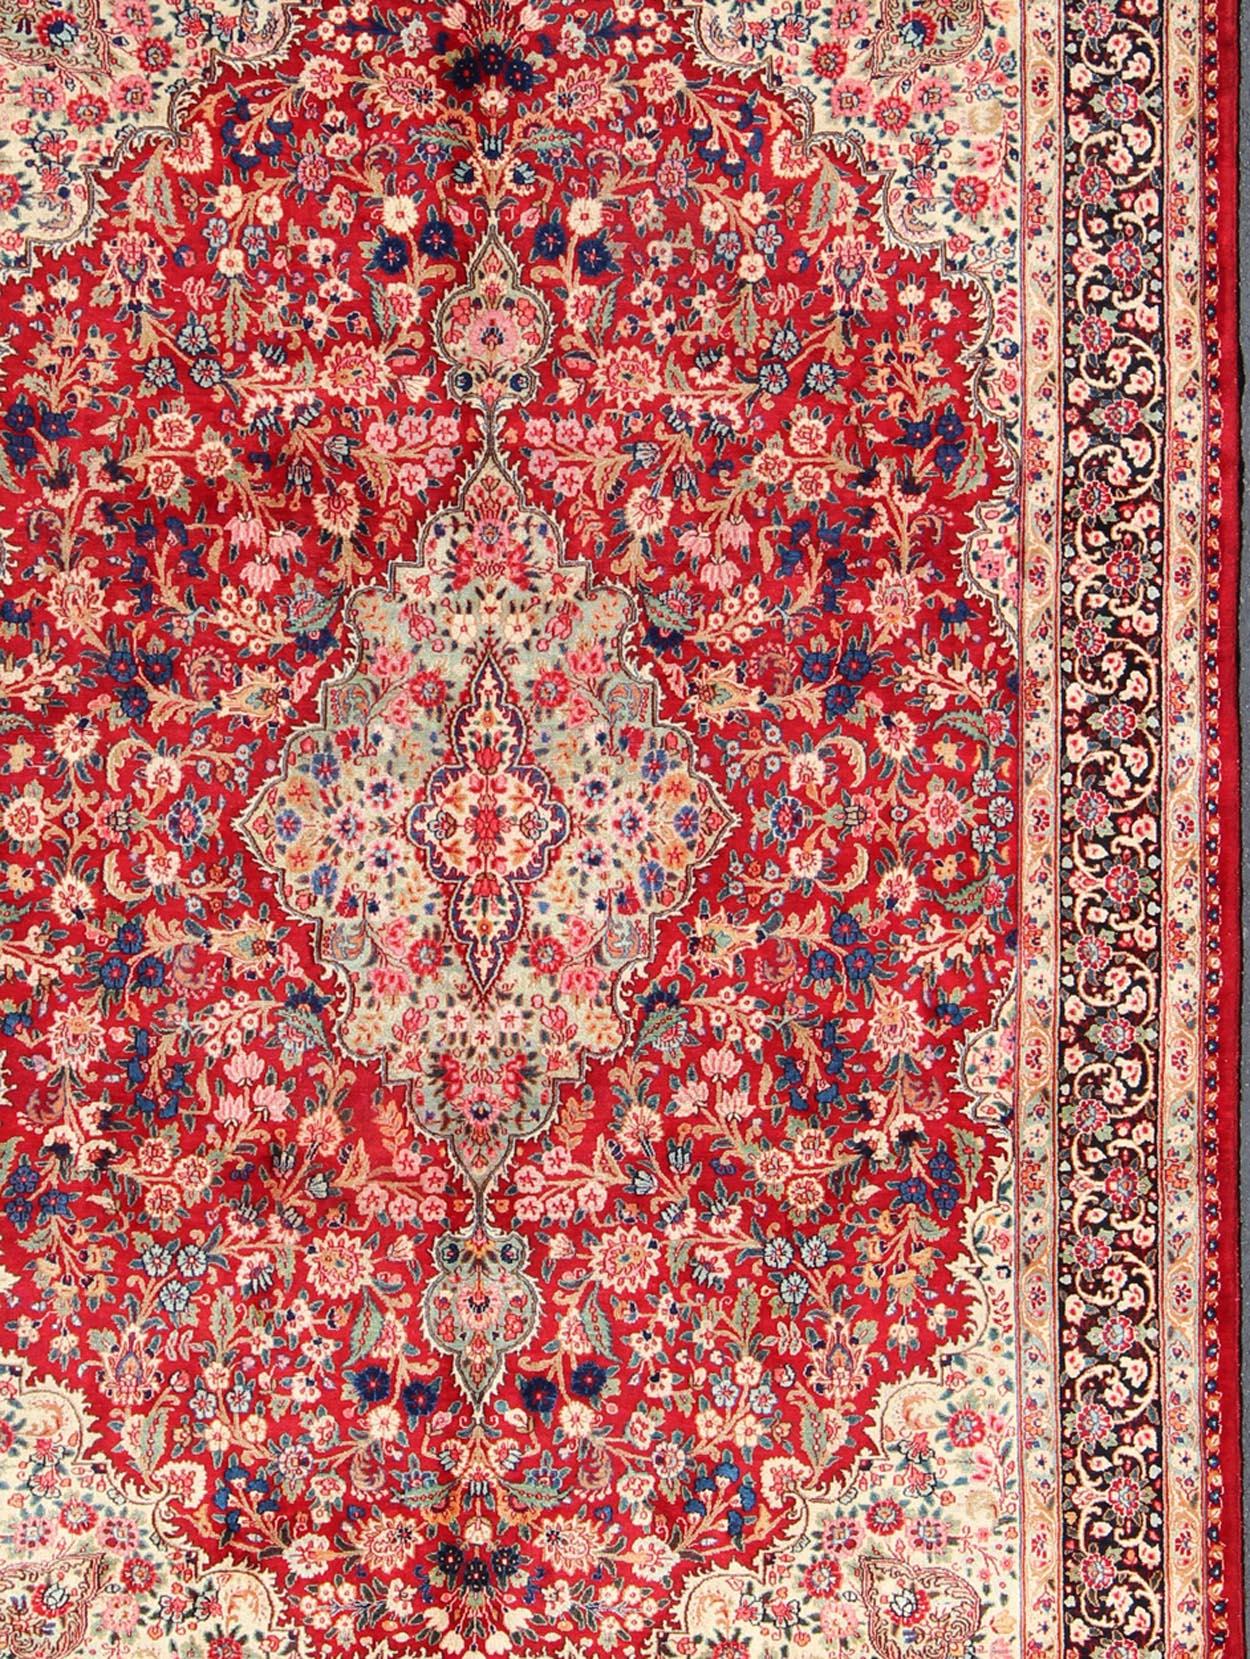 Persischer Mashad-Teppich mit kunstvollem Blumenmedaillon-Muster in Rot, Creme und Onyx, Teppich h-401-9, Herkunftsland/Typ: Iran / Maschhad, um 1950

Dieser hochdekorative und kunstvolle alte persische Maschad-Teppich zeichnet sich durch ein